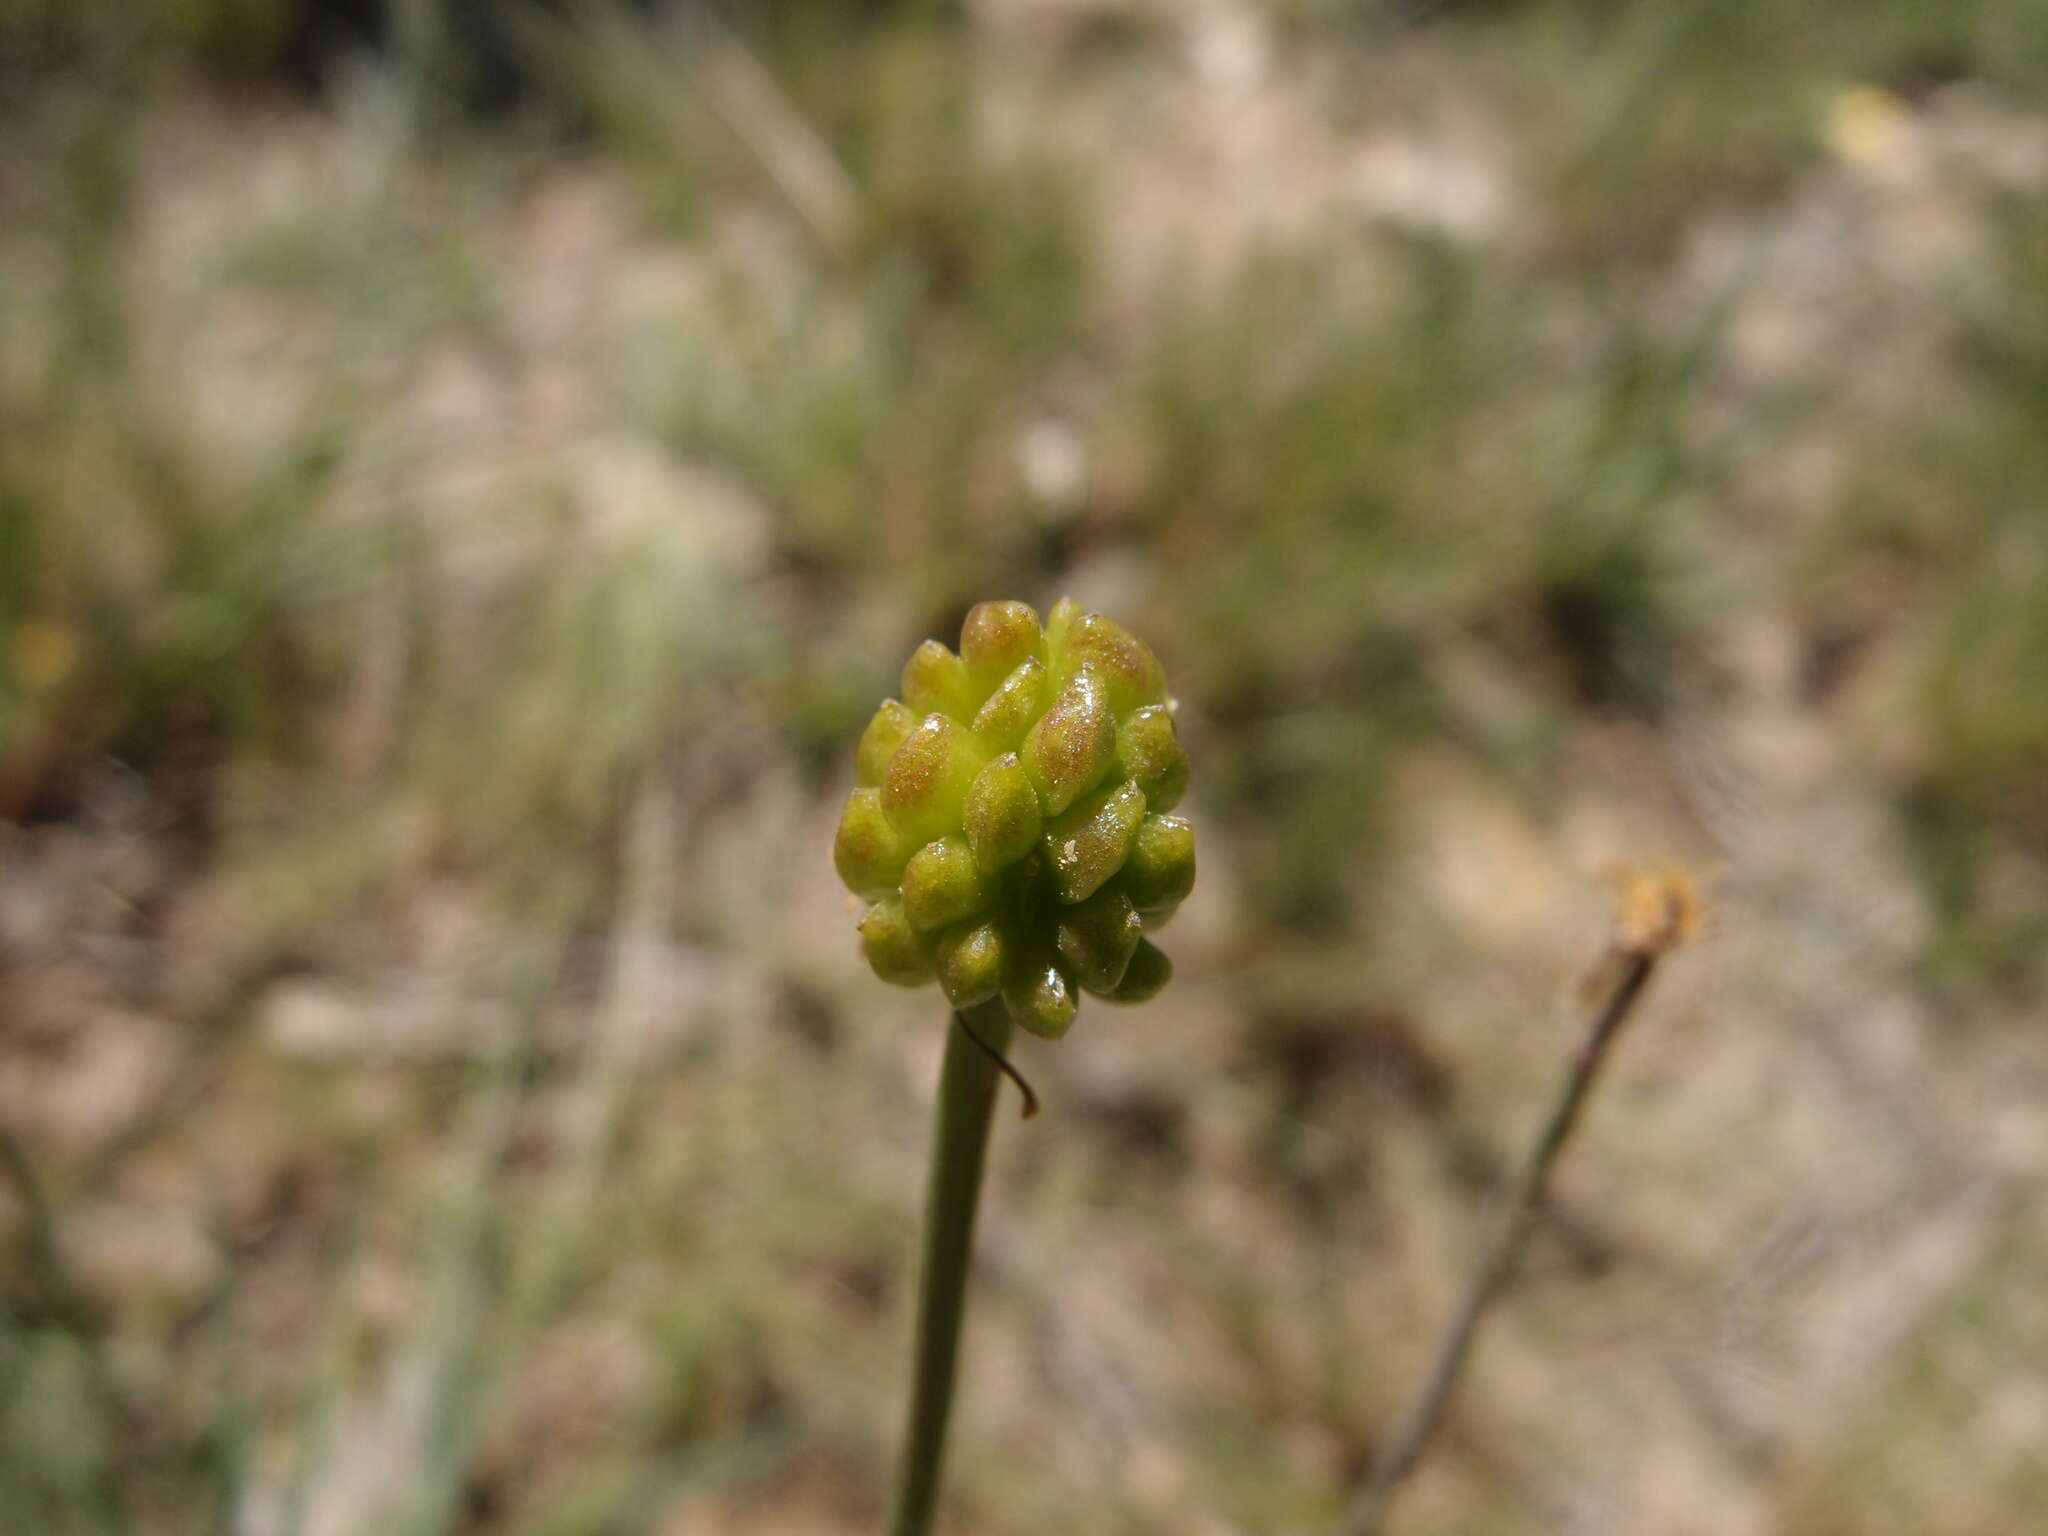 Image of Ranunculus gramineus L.